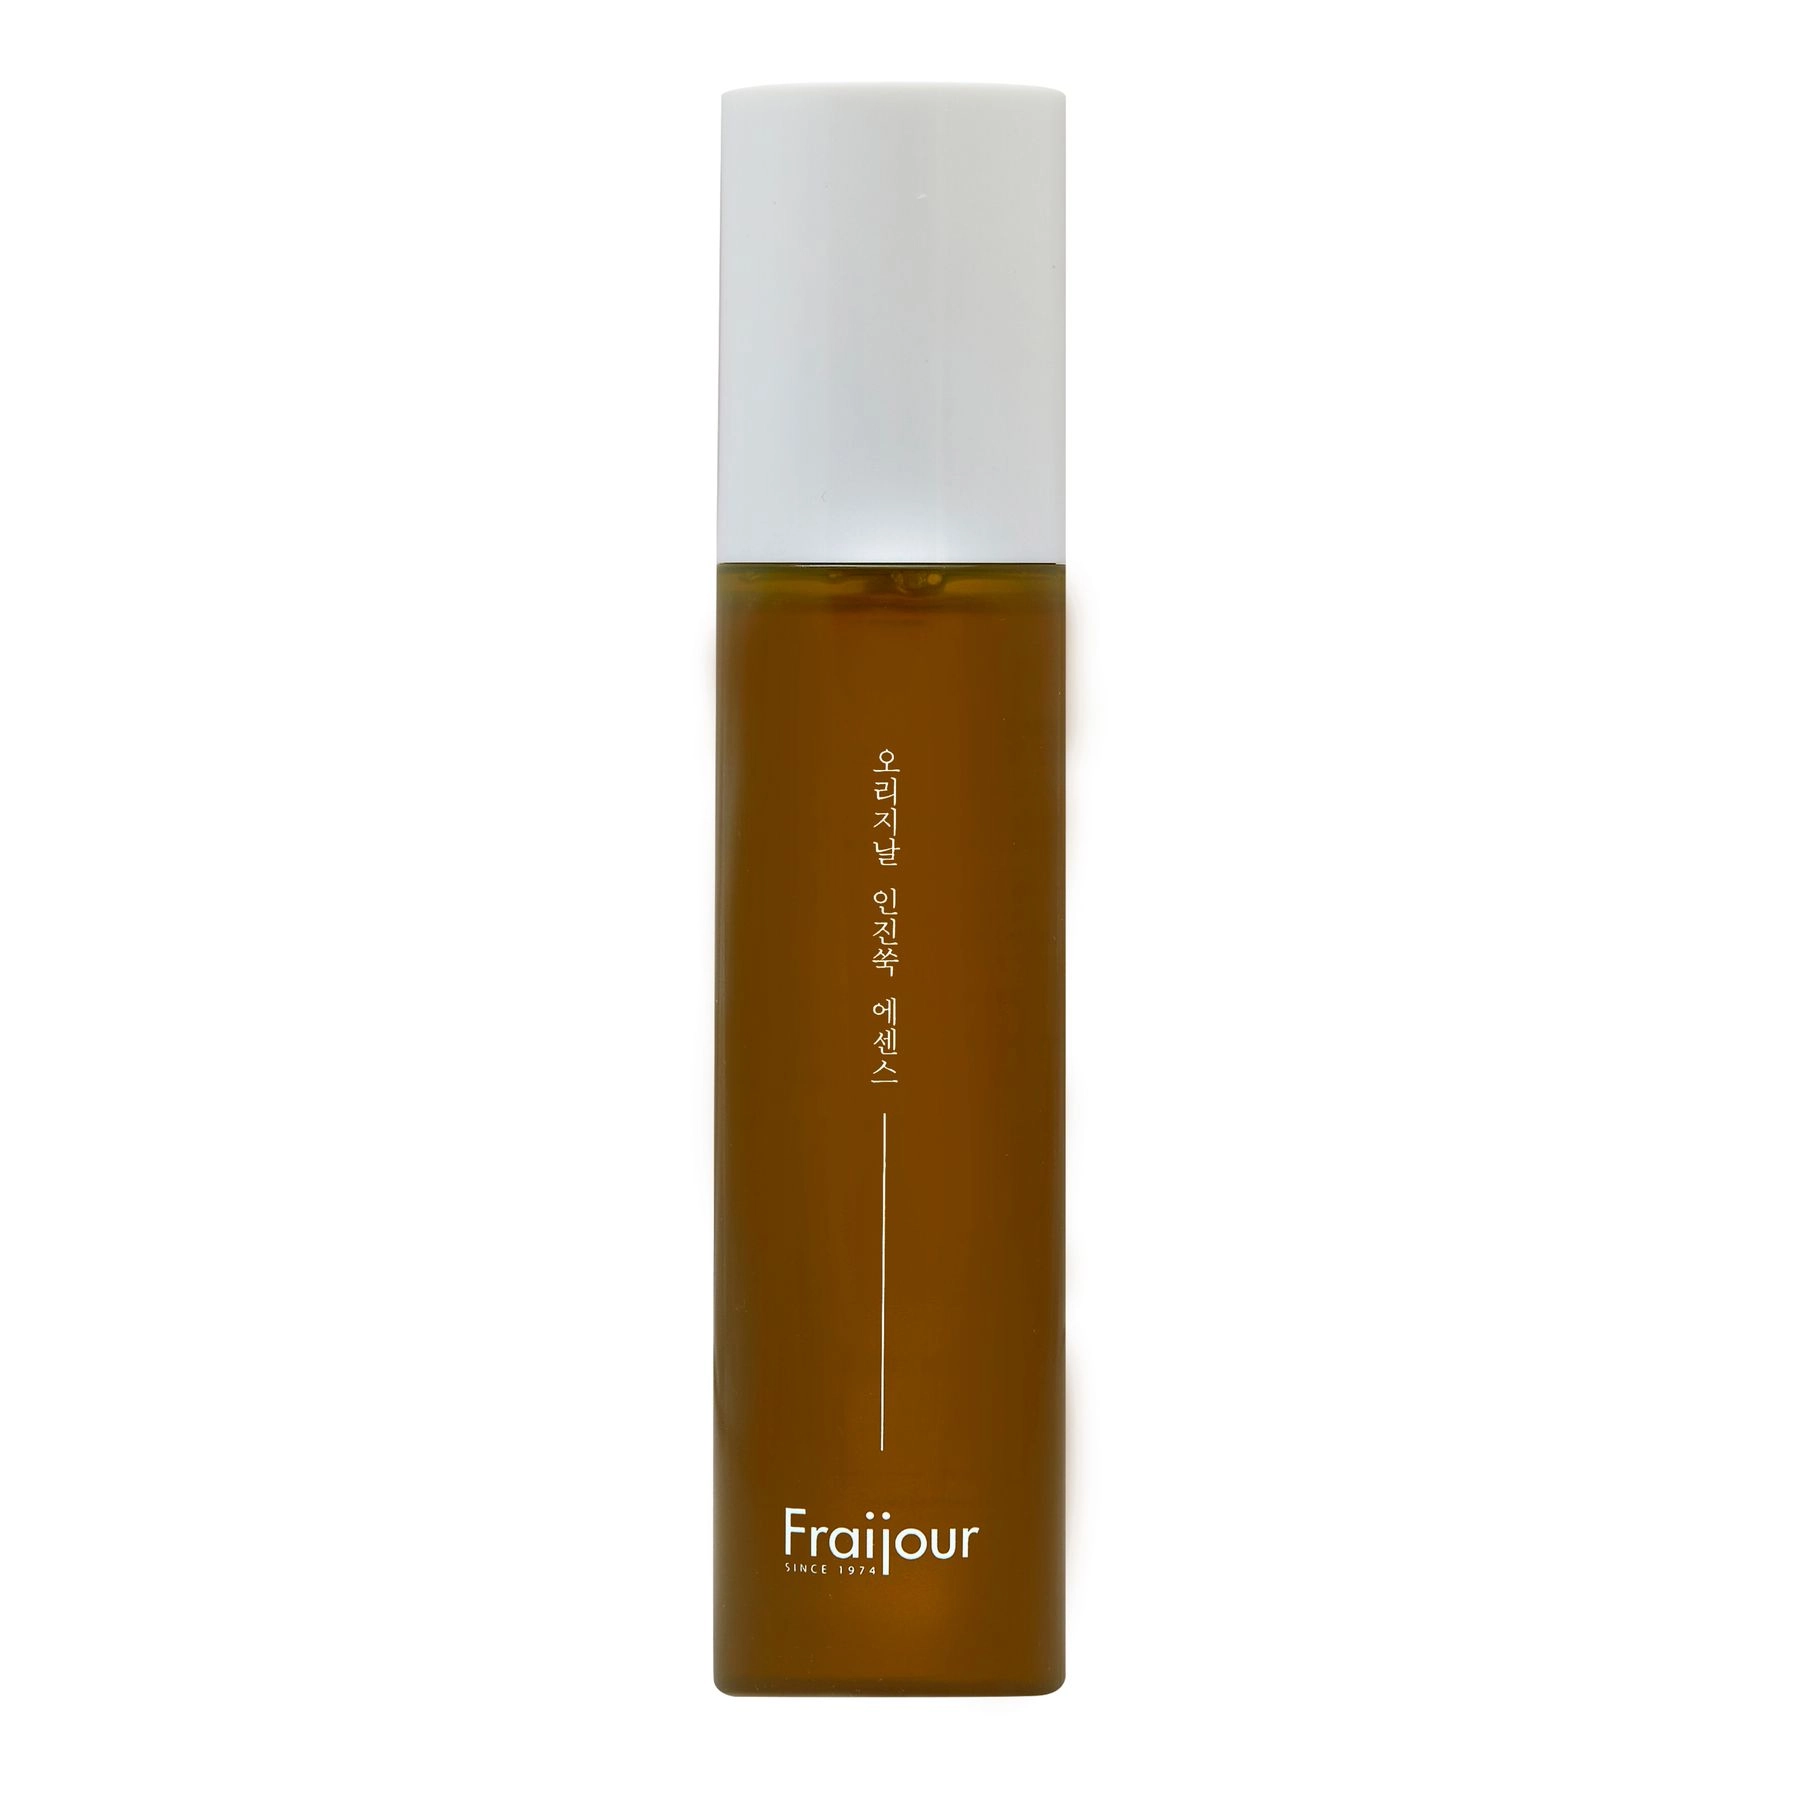 Эссенция для чувствительной кожи с экстрактом полыни - Fraijour Original Artemisia Essence, 115 мл - фото N1